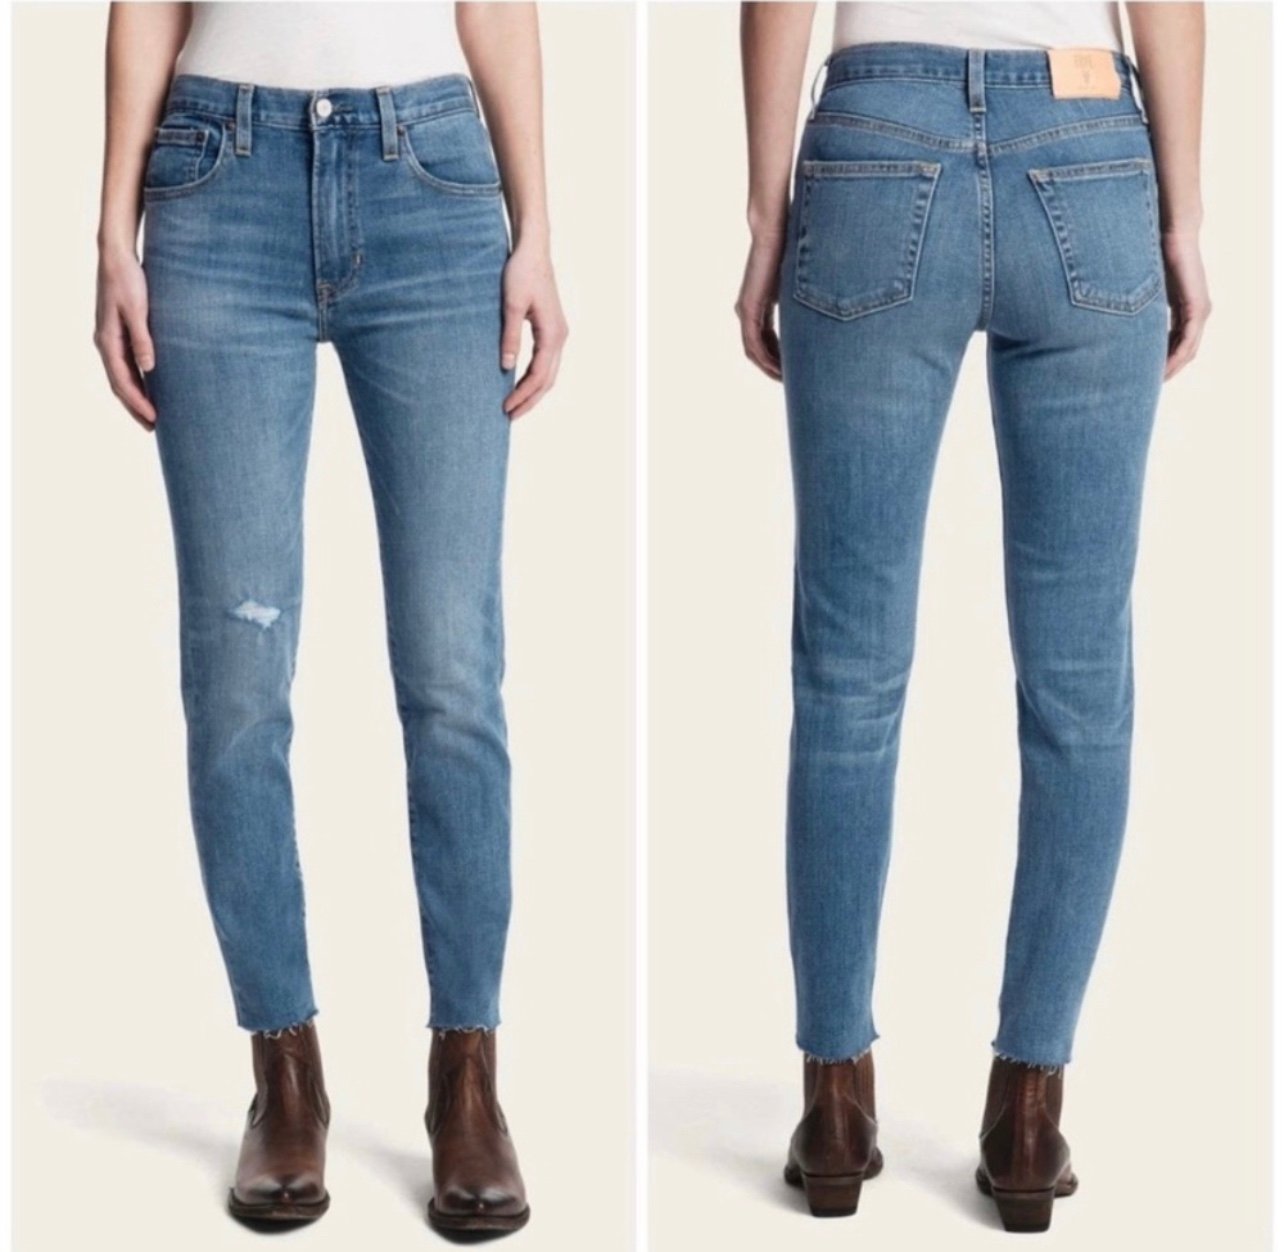 Simple Frye Distressed Sienna Crop Skinny Jeans Size 27